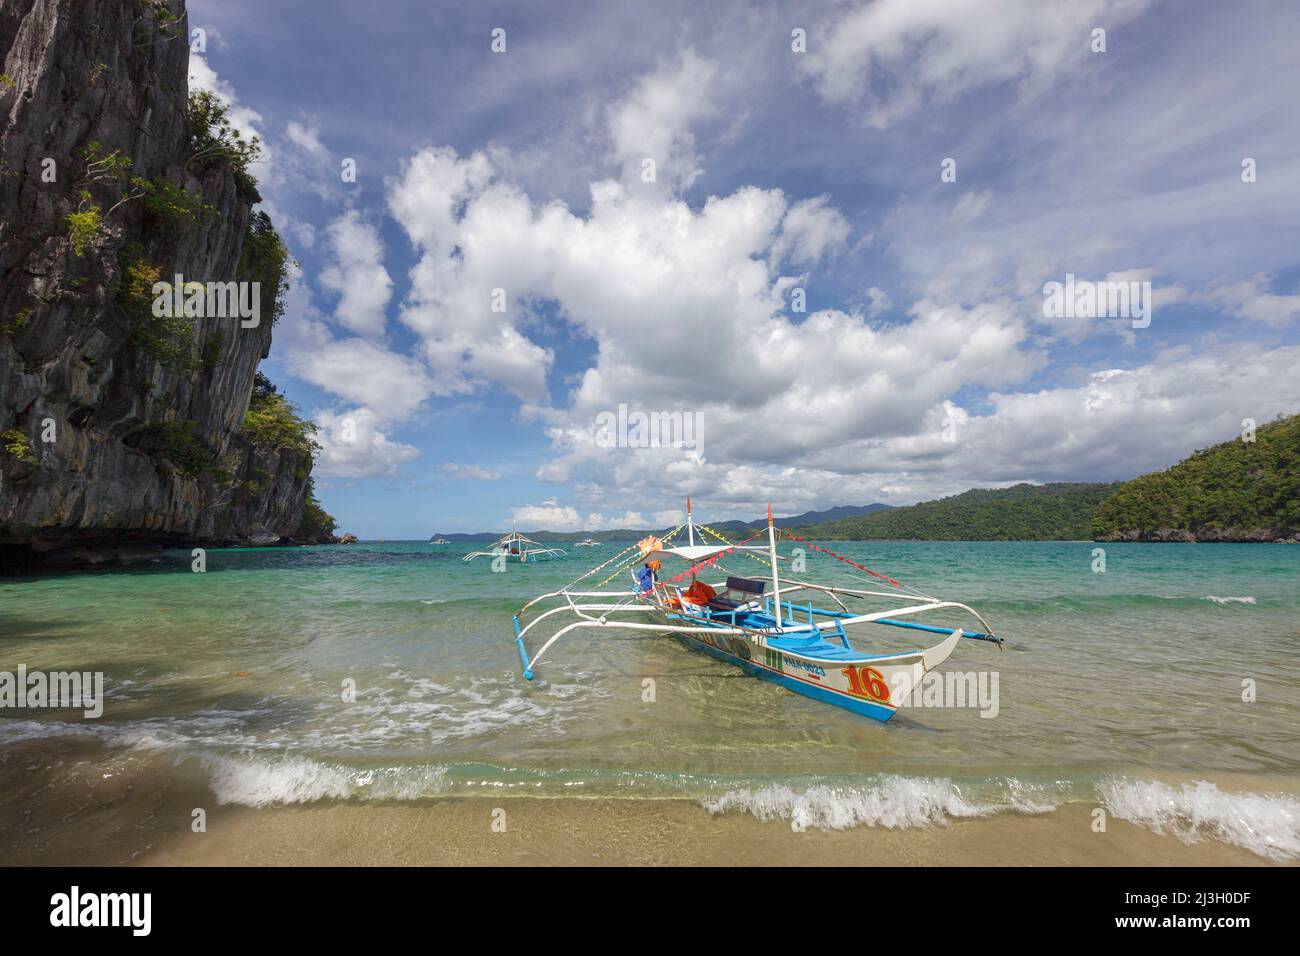 Philippines, Palawan, Puerto Princesa parc national de la rivière souterraine, canoë-outrigger amarré sur la plage de sable où les touristes débarquent pour visiter les grottes Banque D'Images